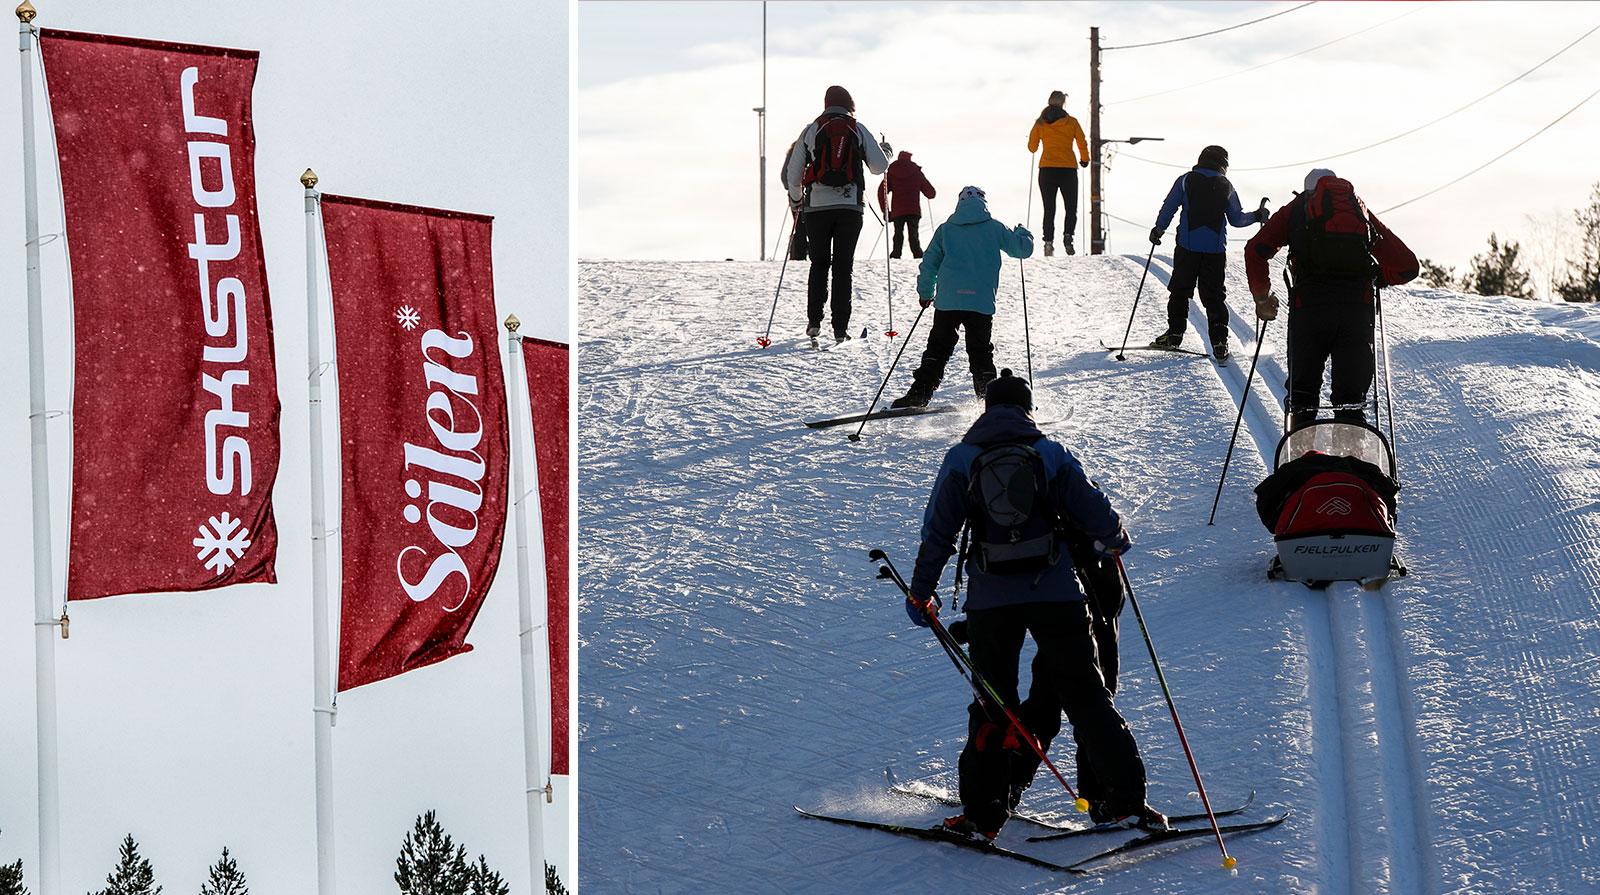 Det blir dyrare att åka skidor i Sälen i vinter. Arkivbild.